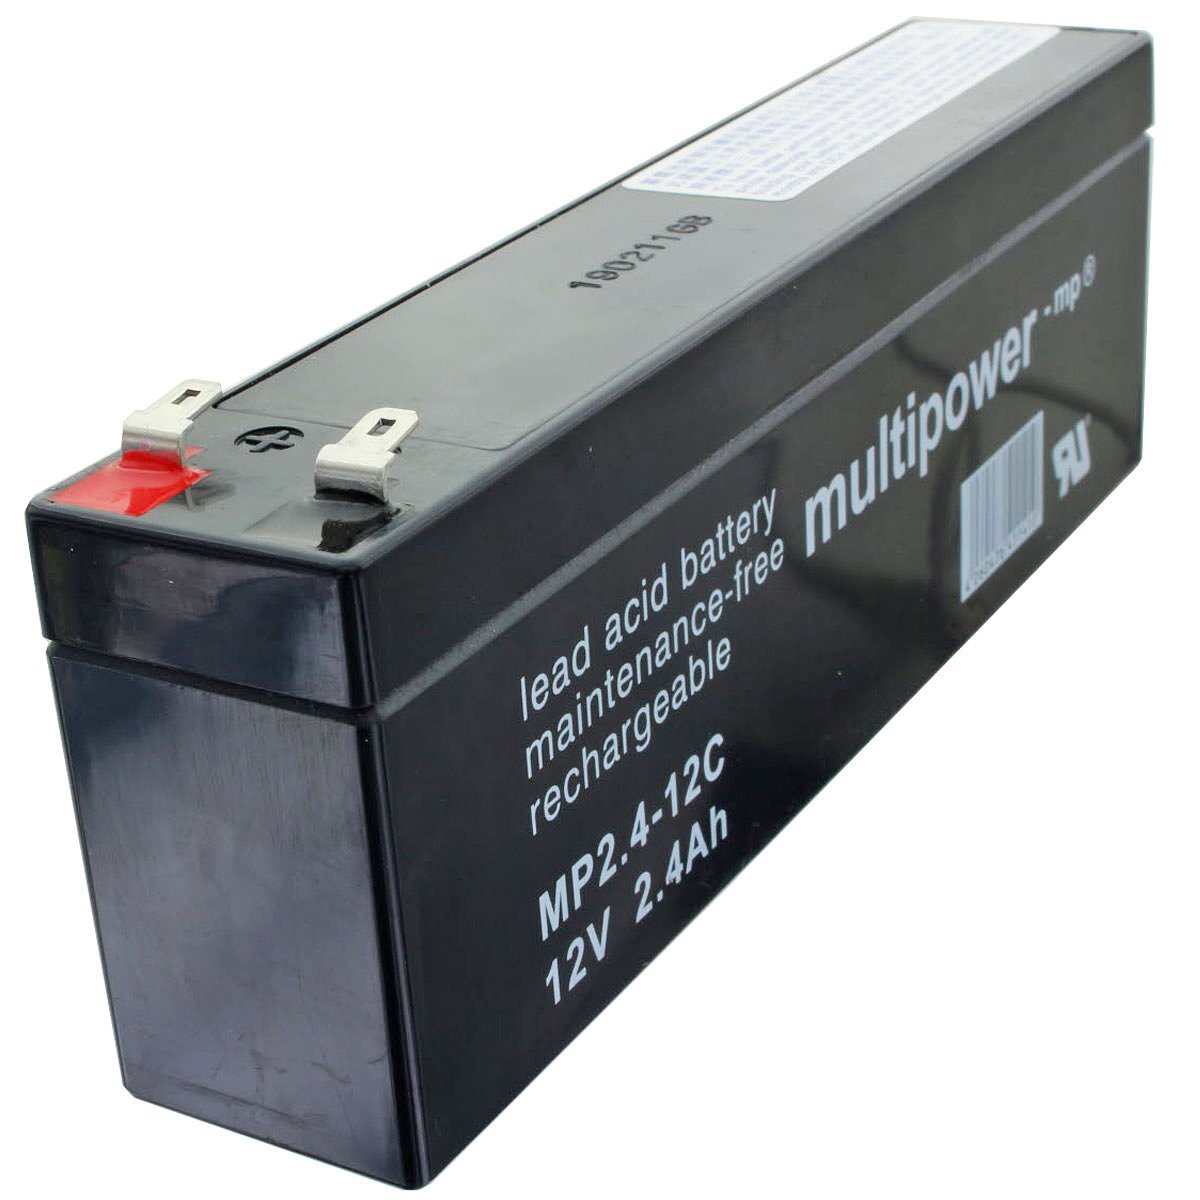 MULTIPOWER MP2.4-12C Multipower loodbatterij met 4,8 mm Faston-contact